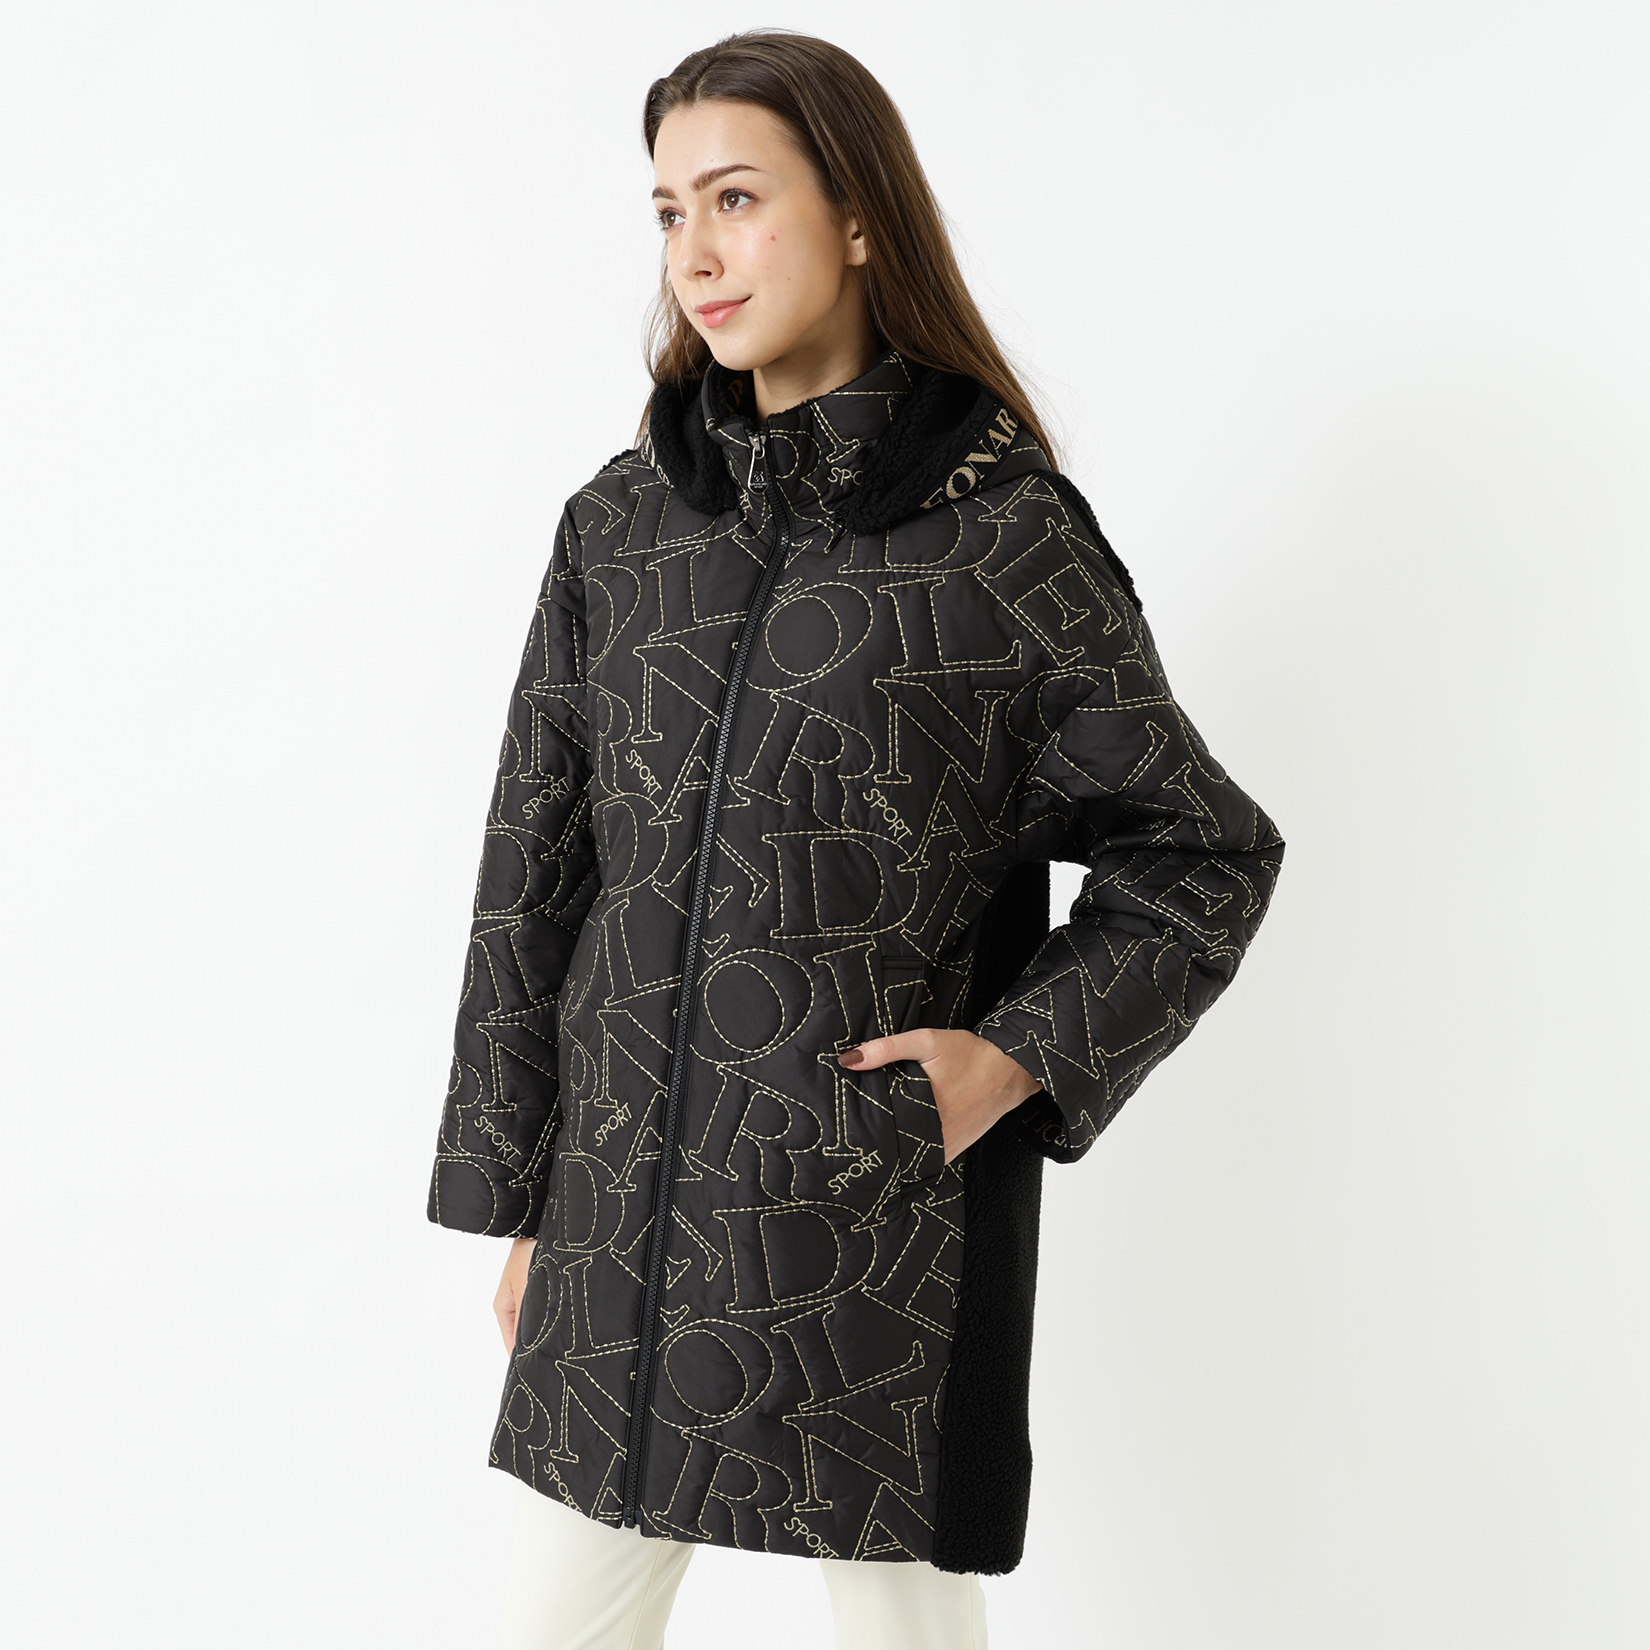 ■レオナールスポーツ キルティングコート 黒 42 美品とても綺麗なコートです